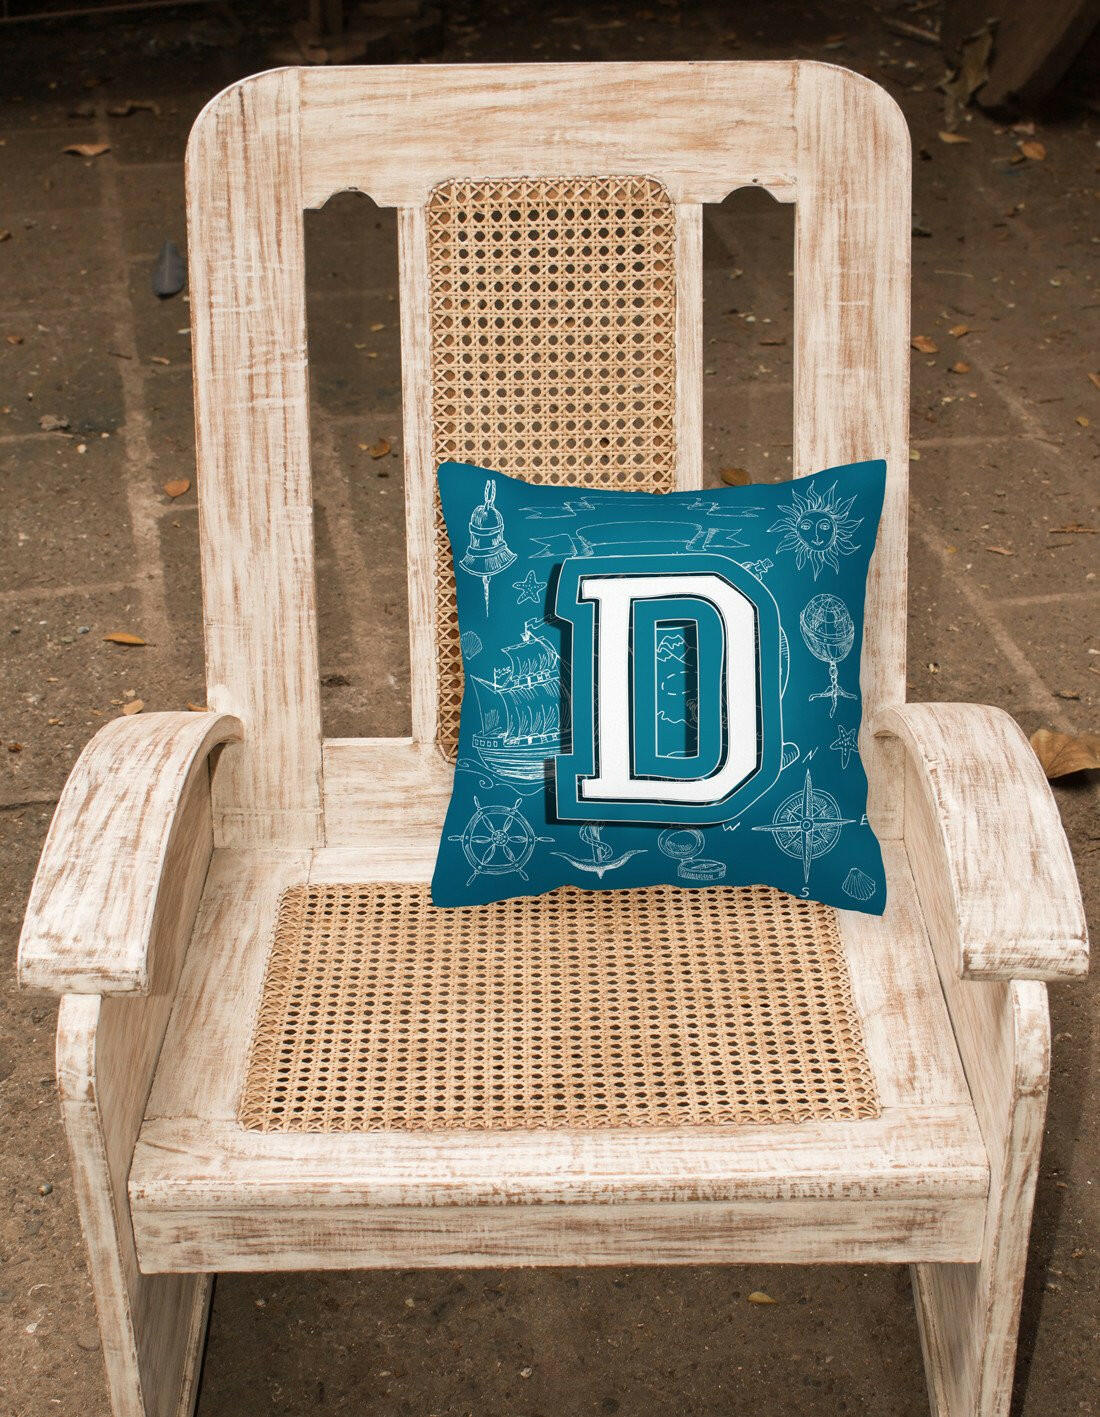 Letter D Sea Doodles Initial Alphabet Canvas Fabric Decorative Pillow CJ2014-DPW1414 by Caroline's Treasures